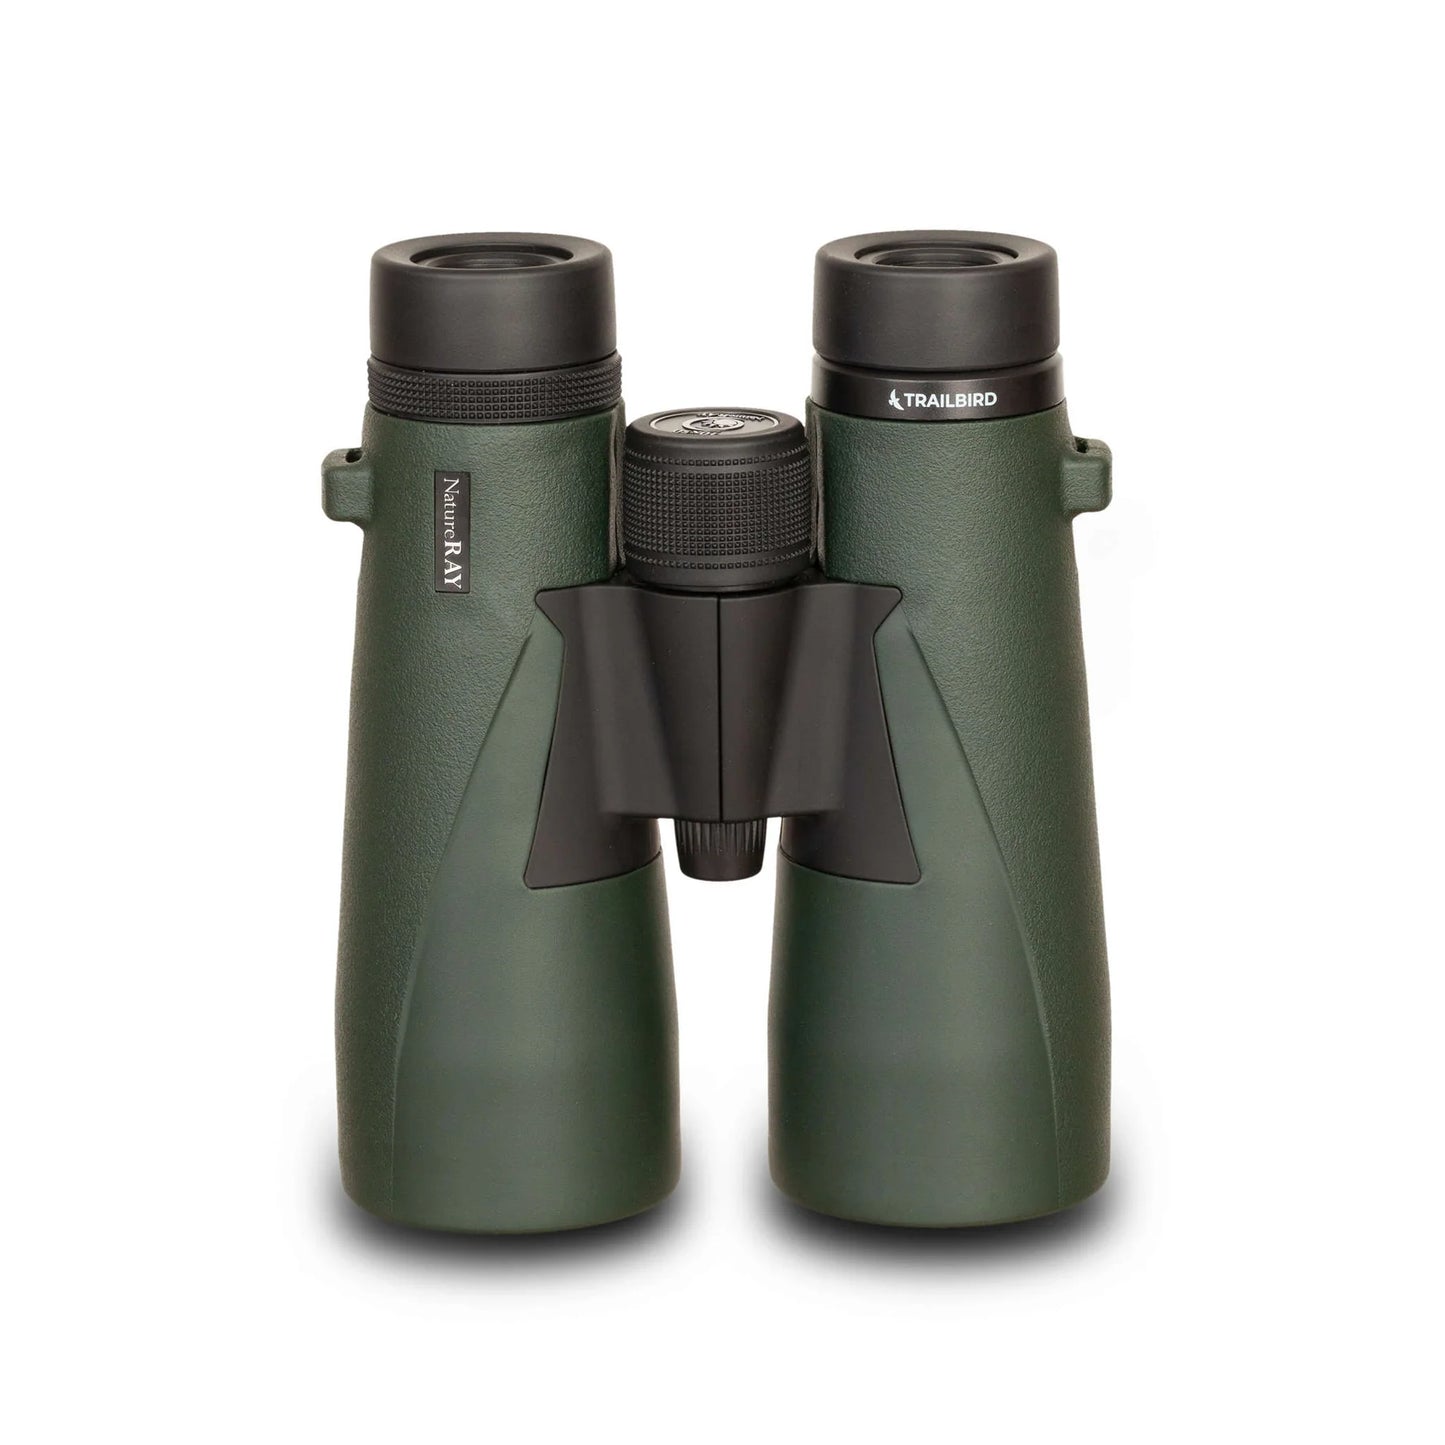 NatureRAY Trailbird  Binoculars - 10x50